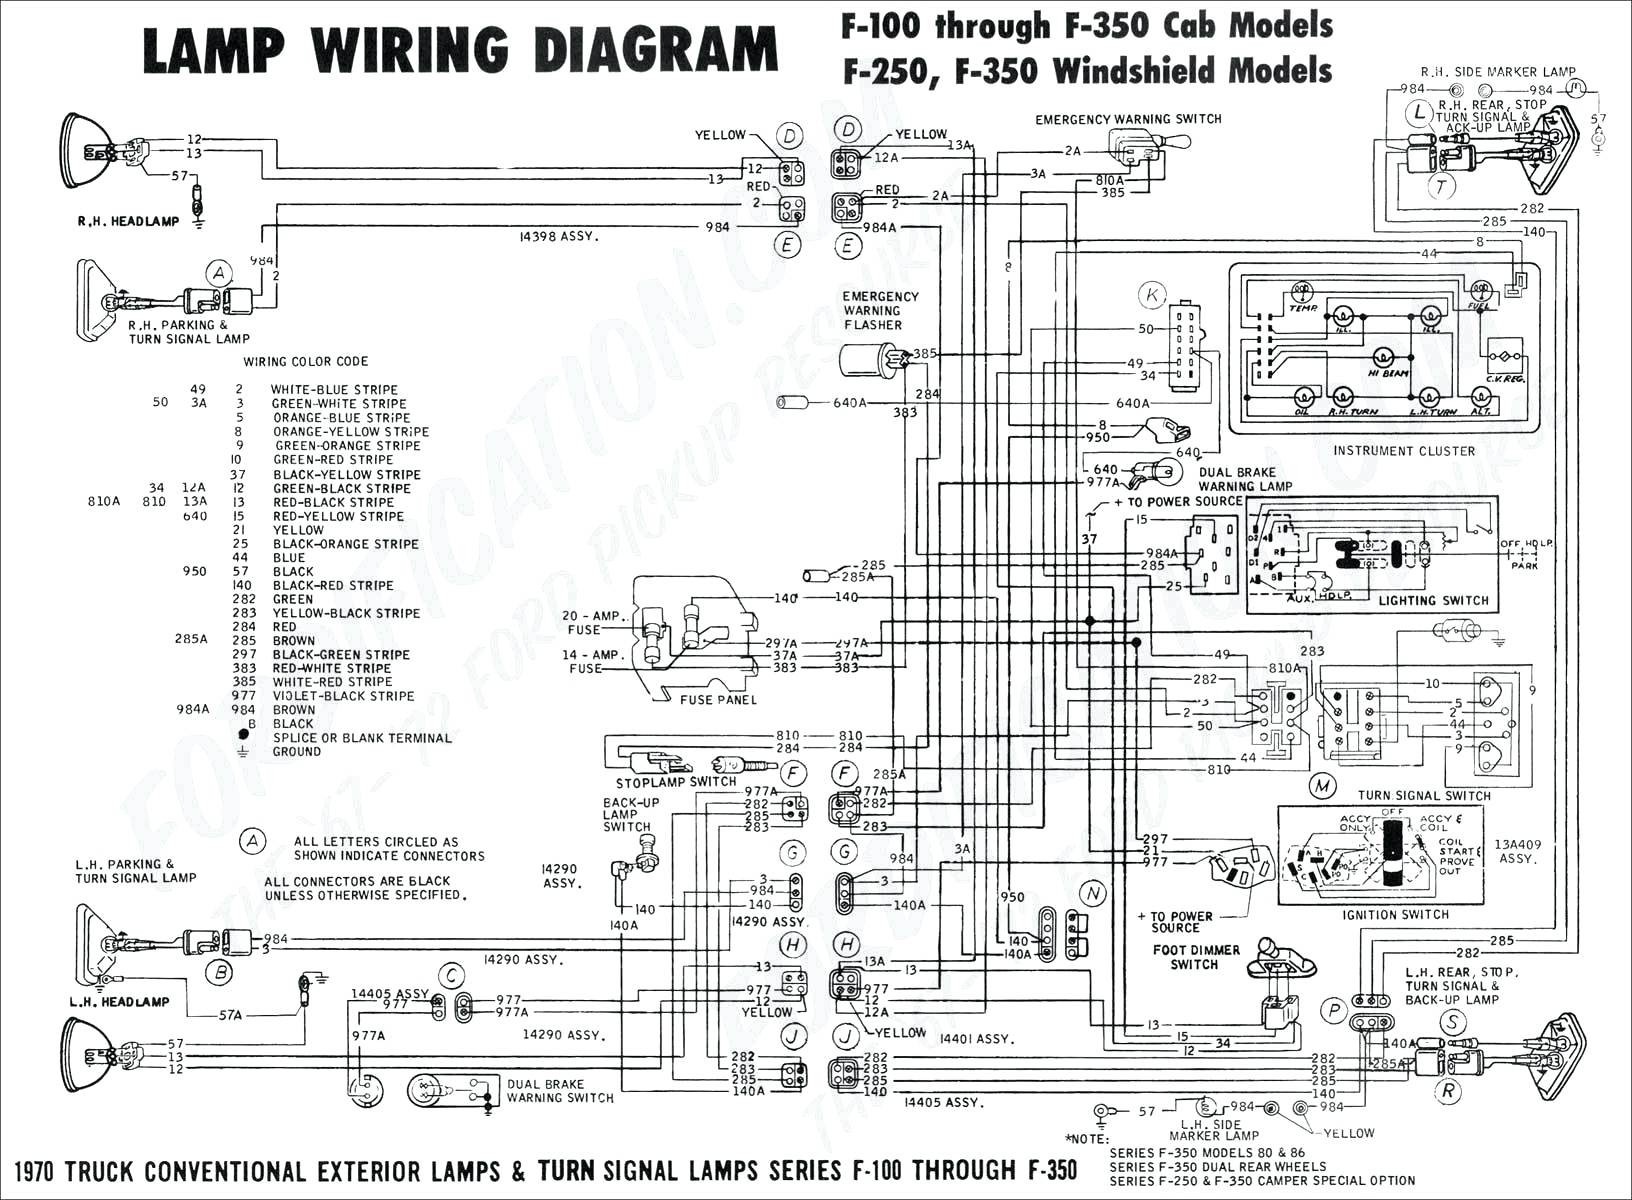 Honda 160cc Engine Diagram 95 Accord Engine Diagram Wiring Diagram Of Honda 160cc Engine Diagram